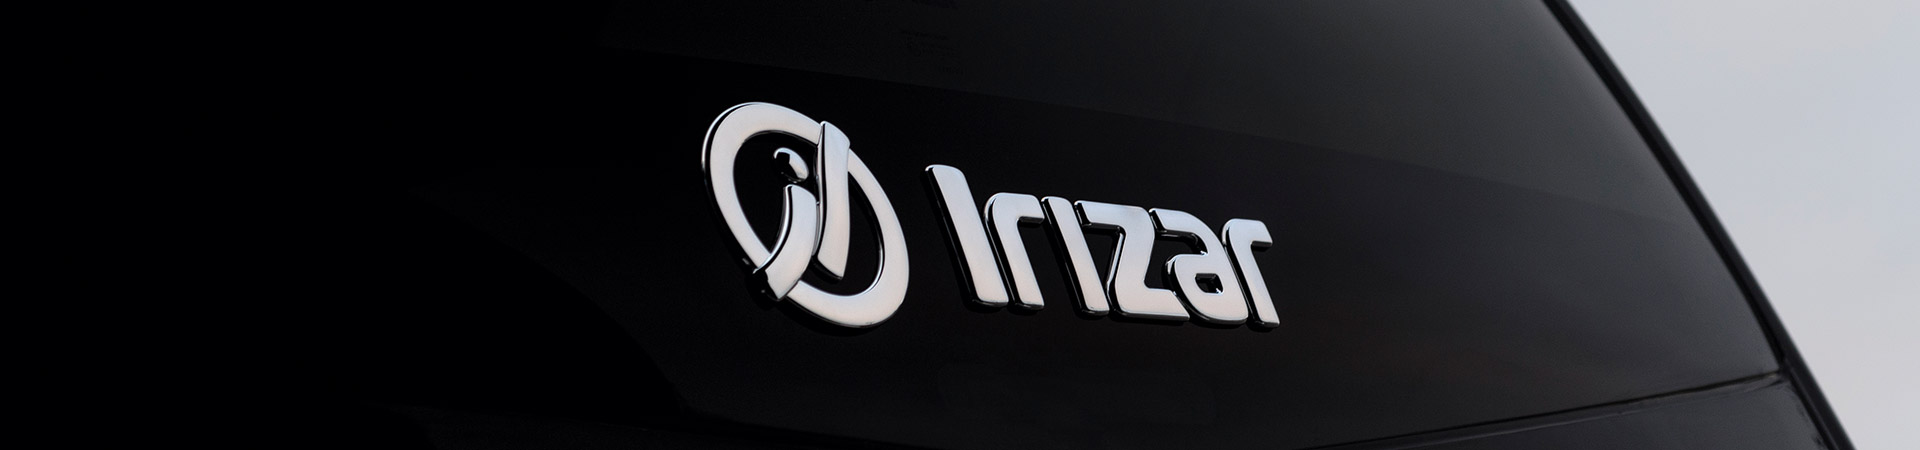 Il marchio Irizar